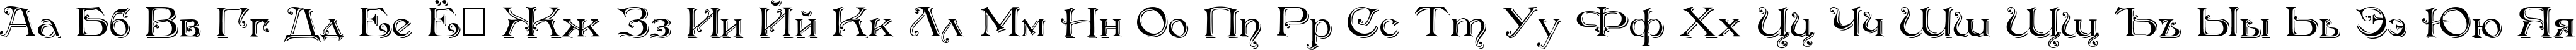 Пример написания русского алфавита шрифтом Antikvar Shadow Roman